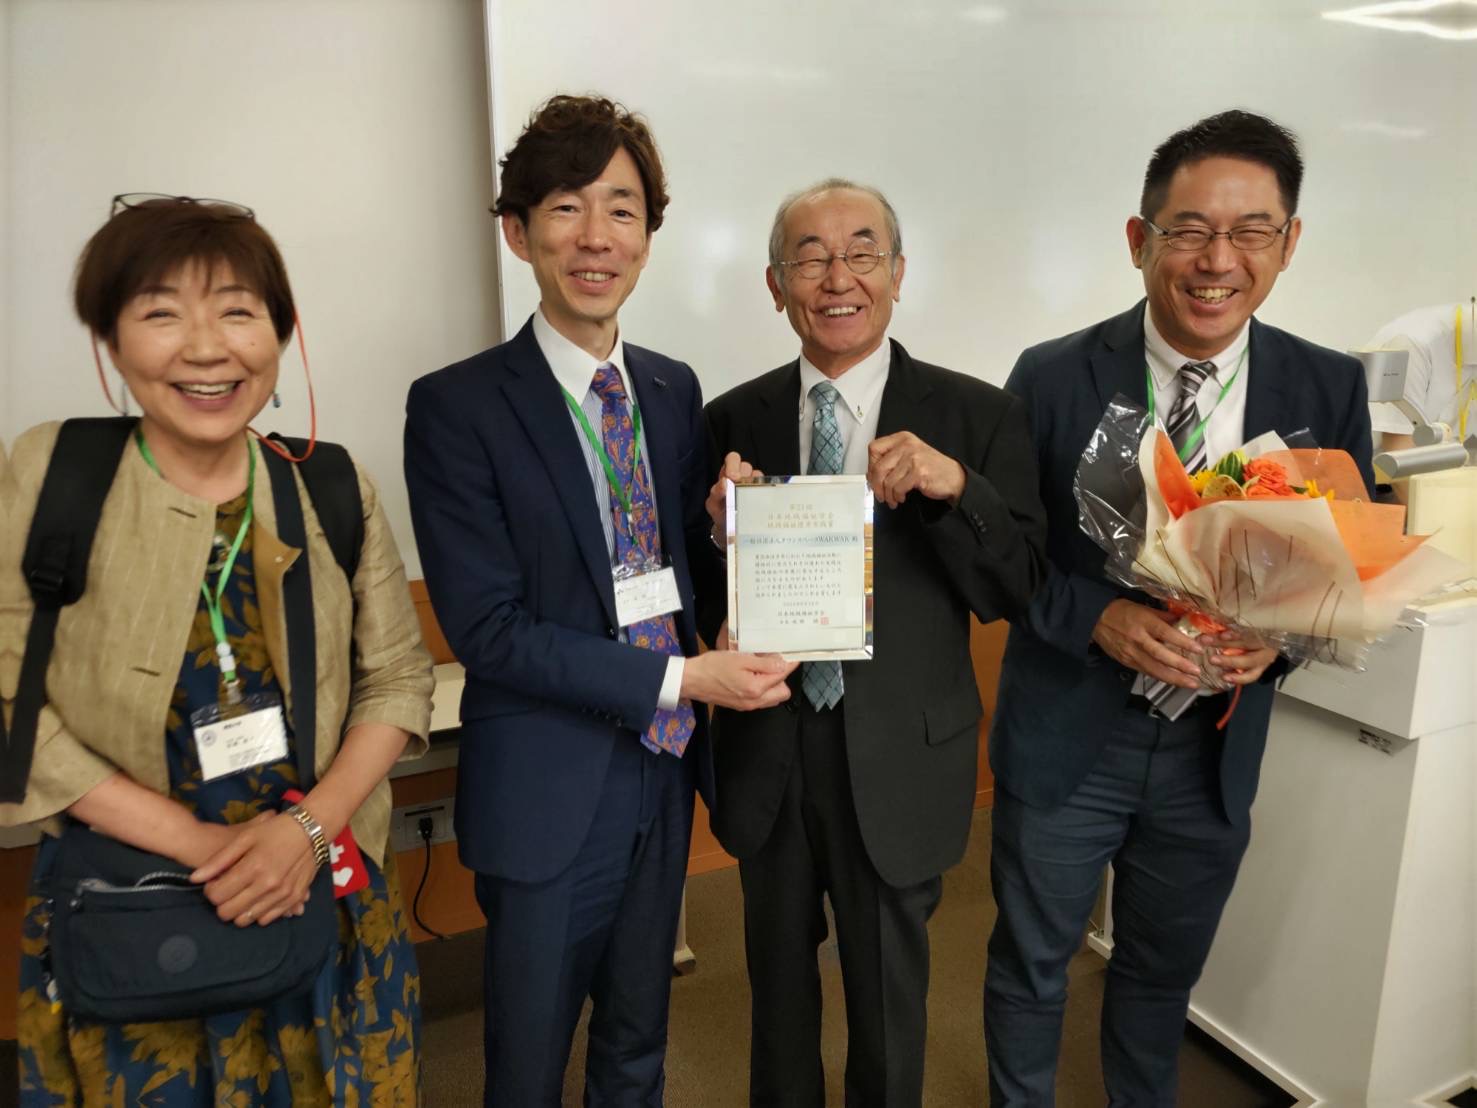 日本地域福祉学会「地域福祉優秀実践賞」を授賞